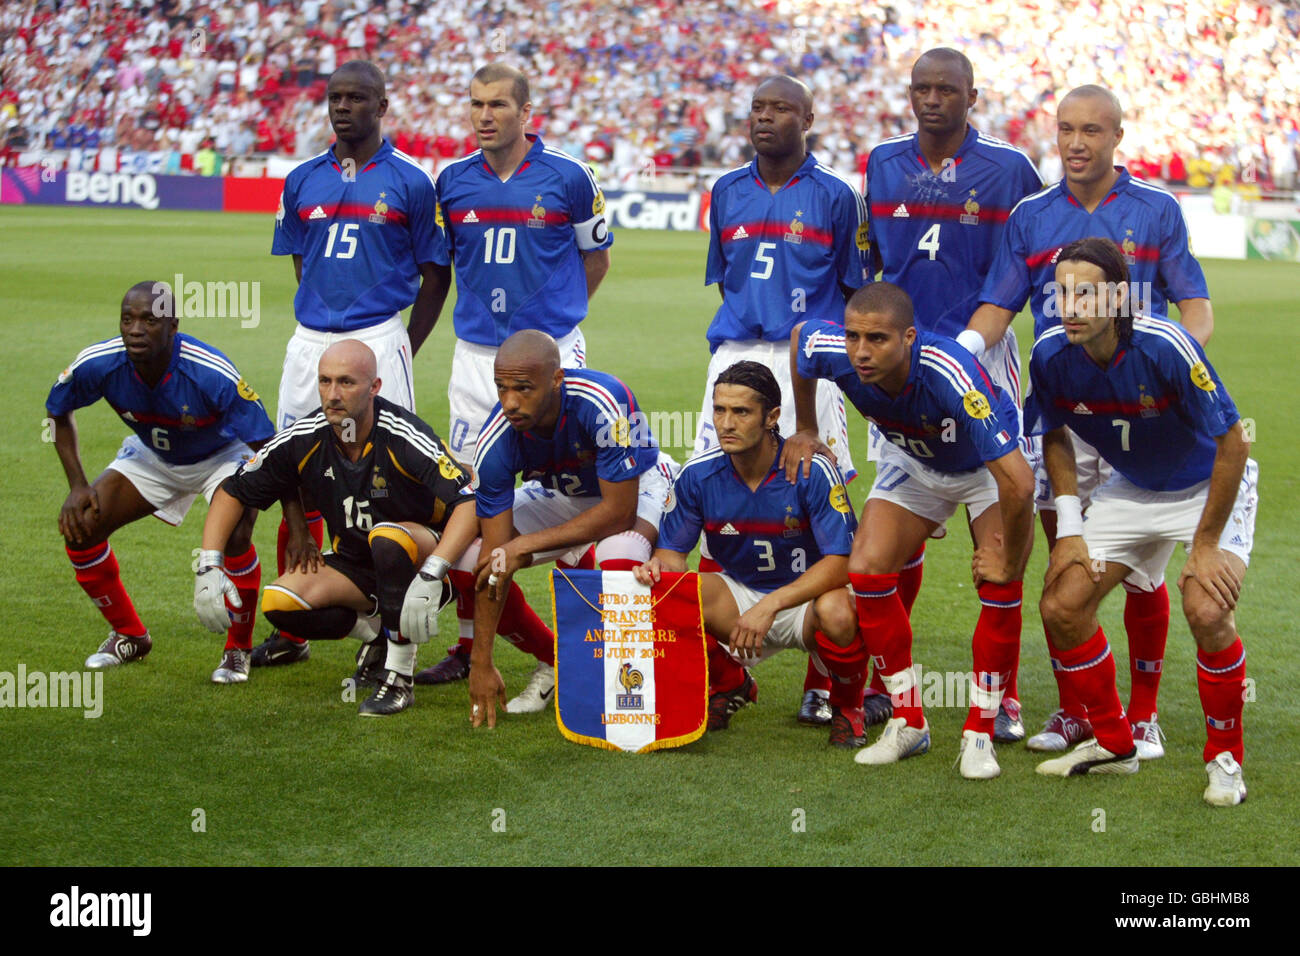 Football - Championnat d'Europe de l'UEFA 2004 - Groupe B - France / Angleterre. Groupe d'équipe France Banque D'Images